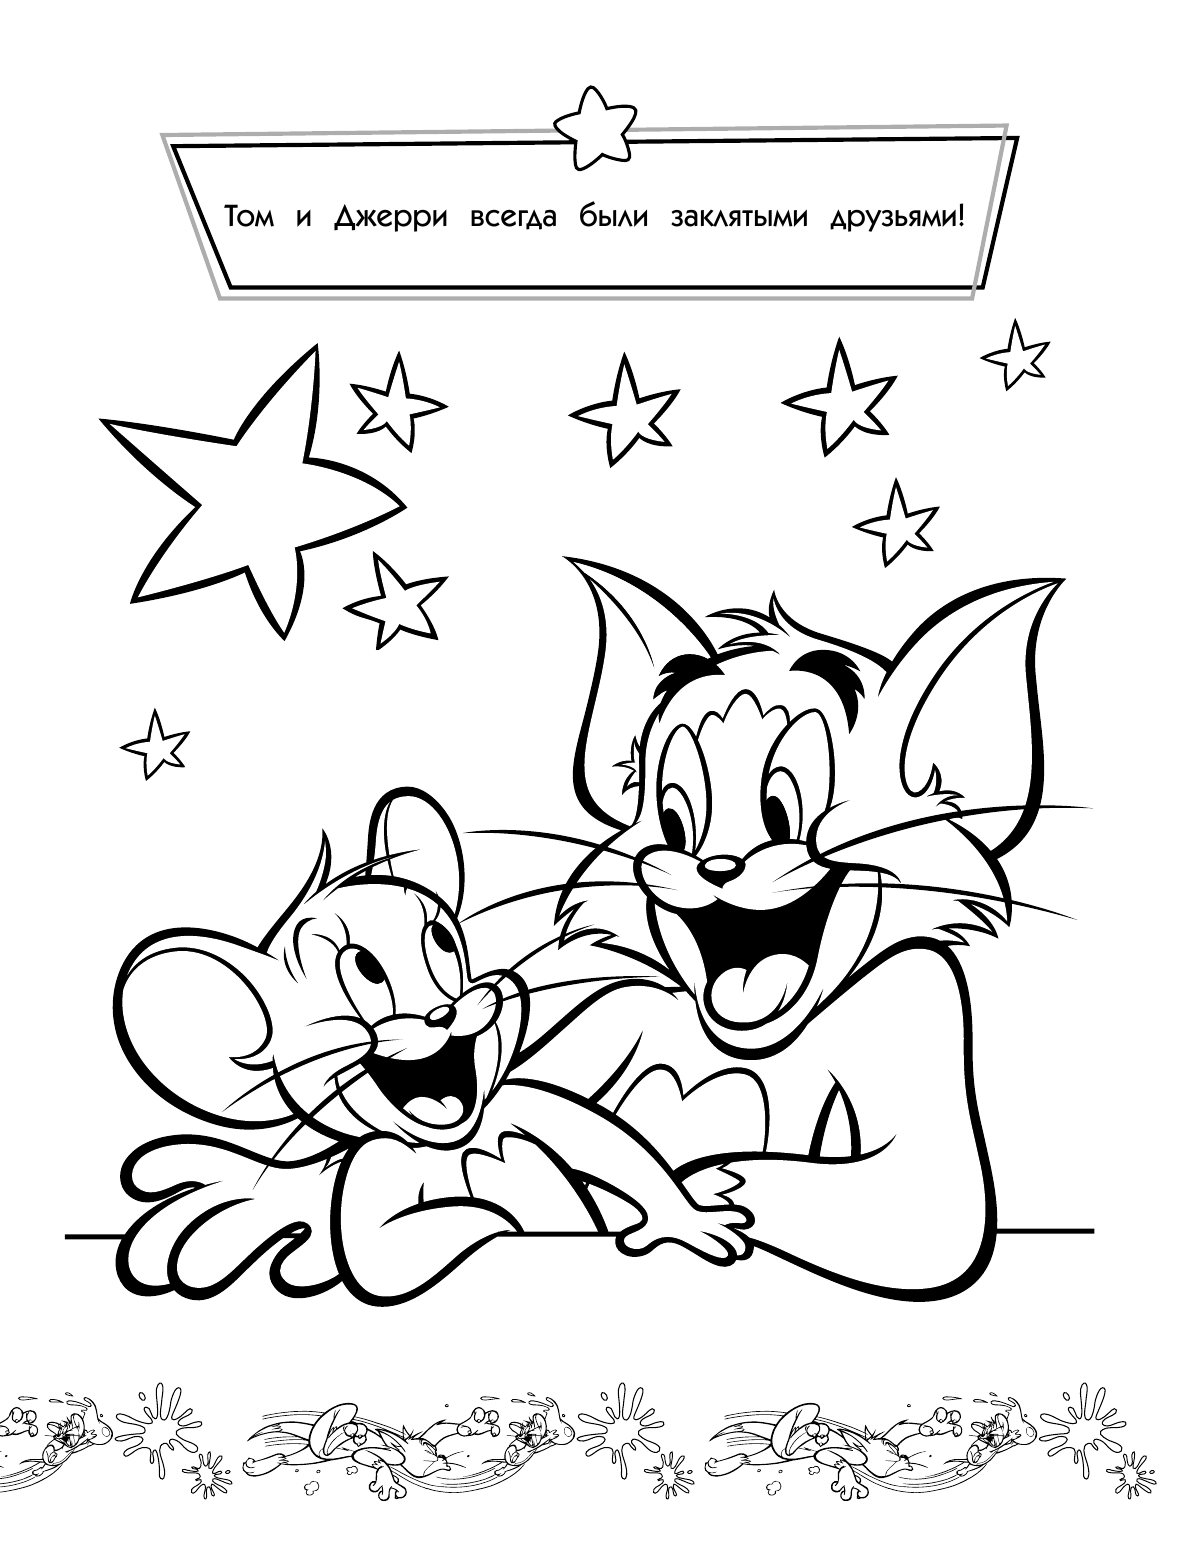  Том и Джерри. Раскраска (желтая) - страница 2